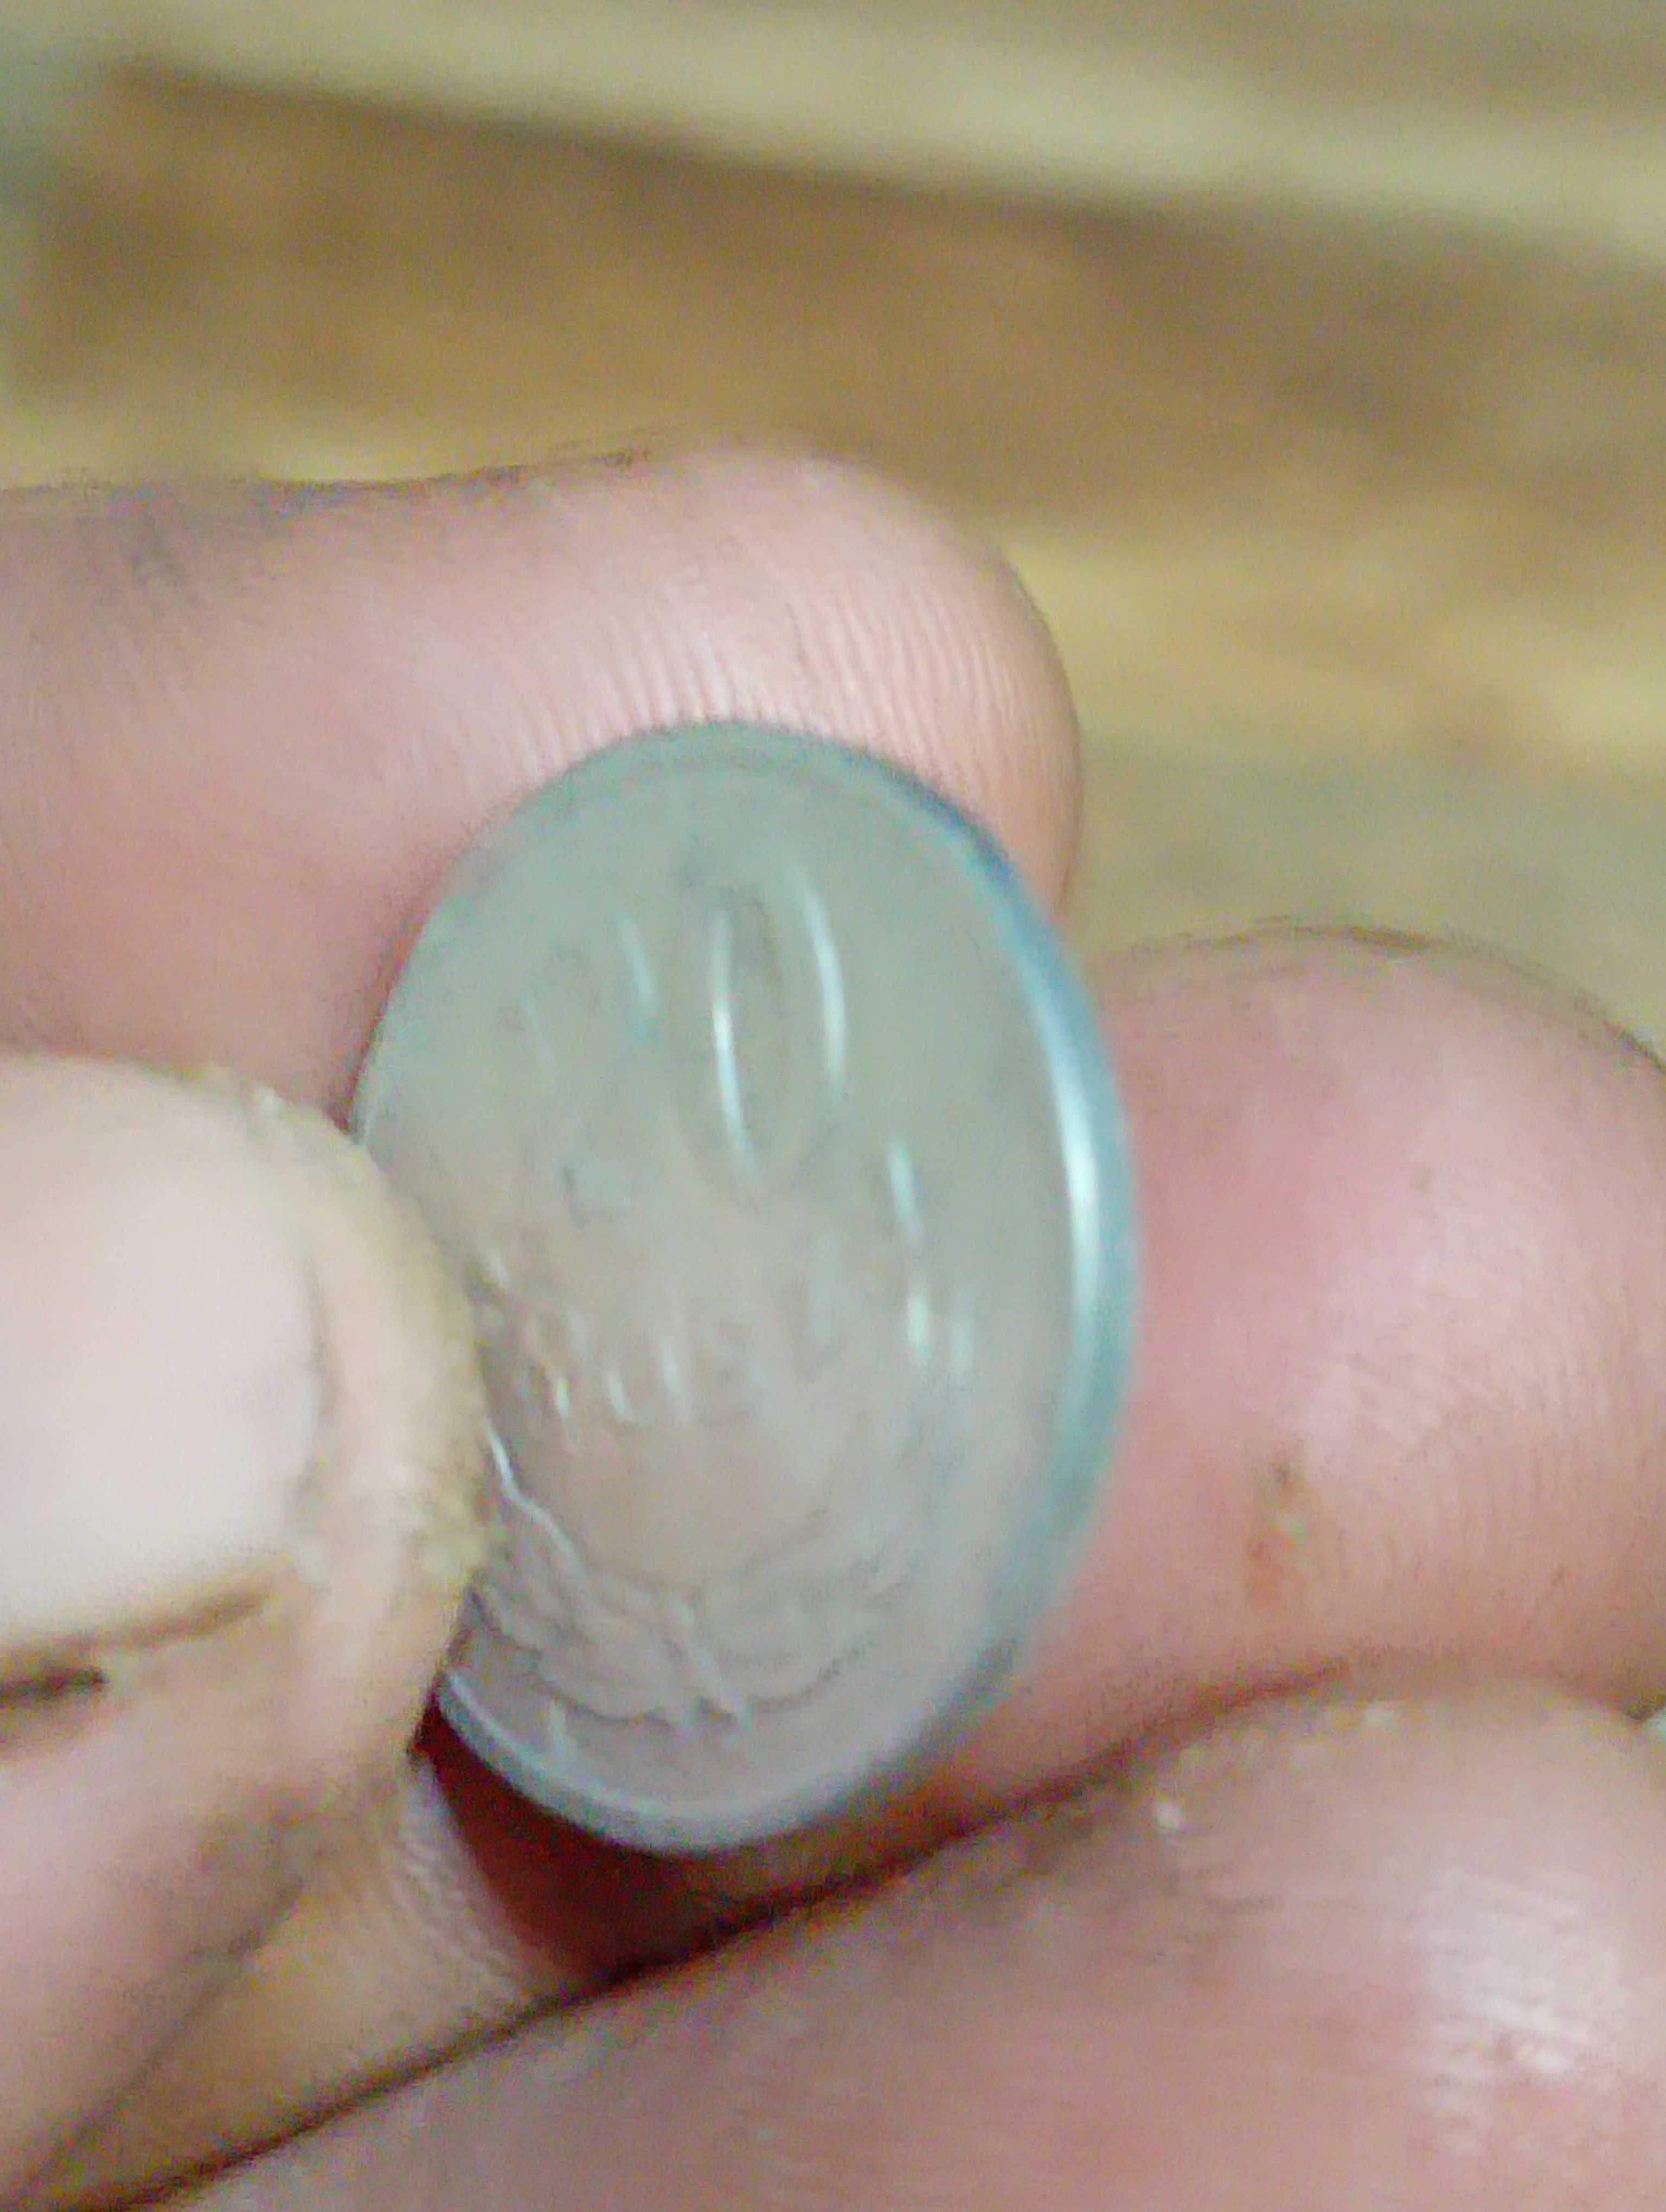 Moneta druga 20 groszy 1949 rok bzm